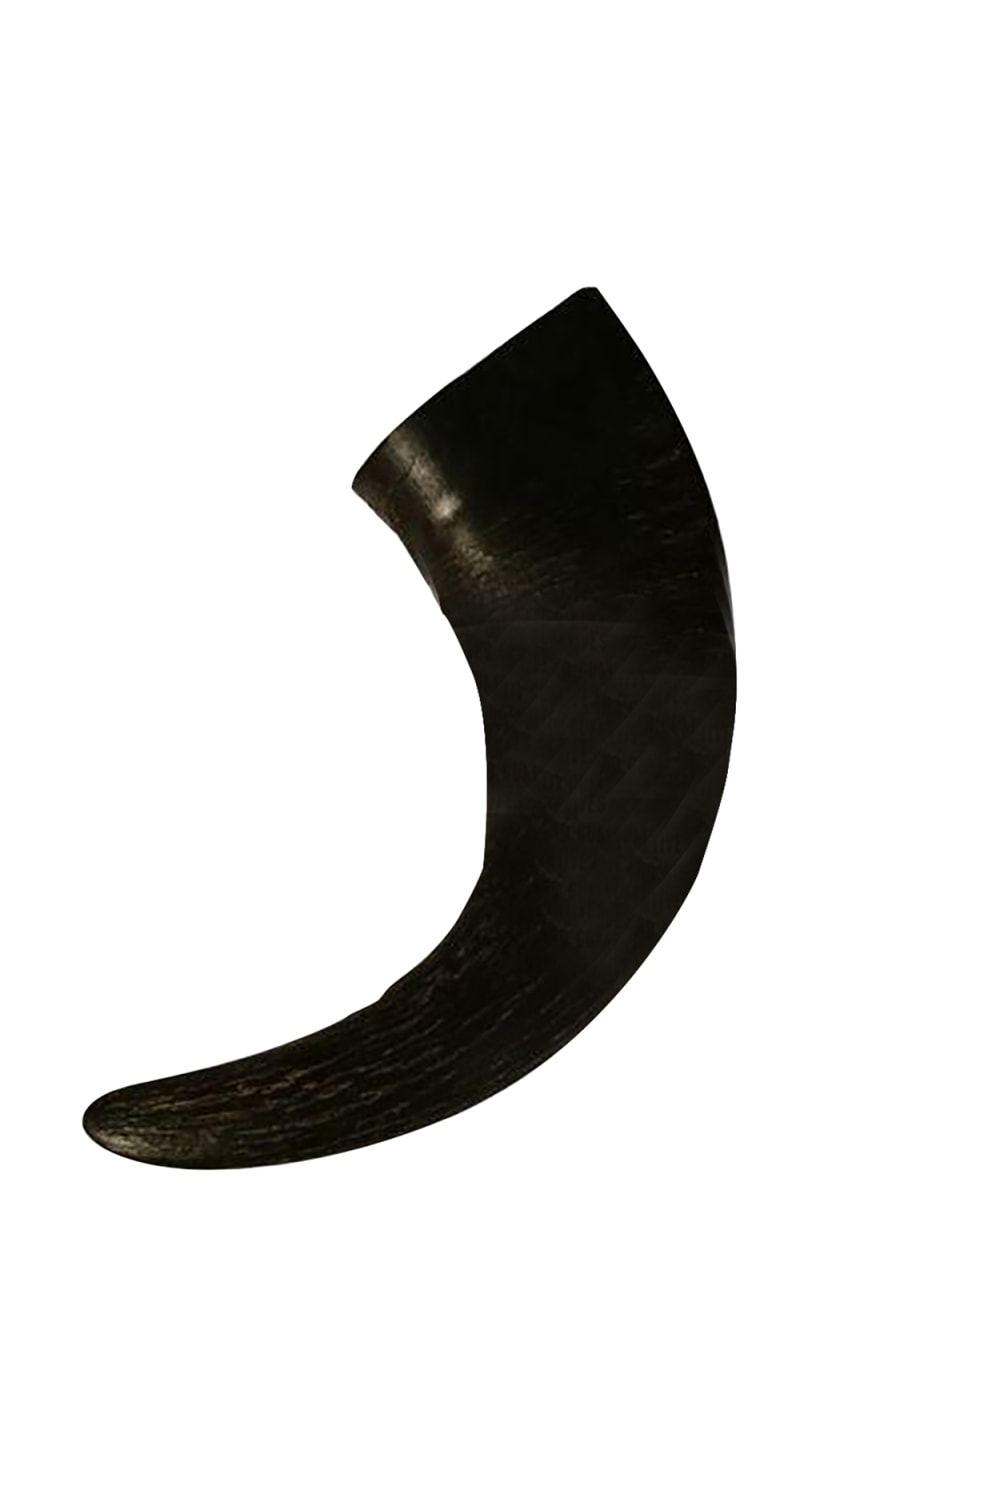 Antos Buffalo Horn Dog Chew Toy (Black) (L)